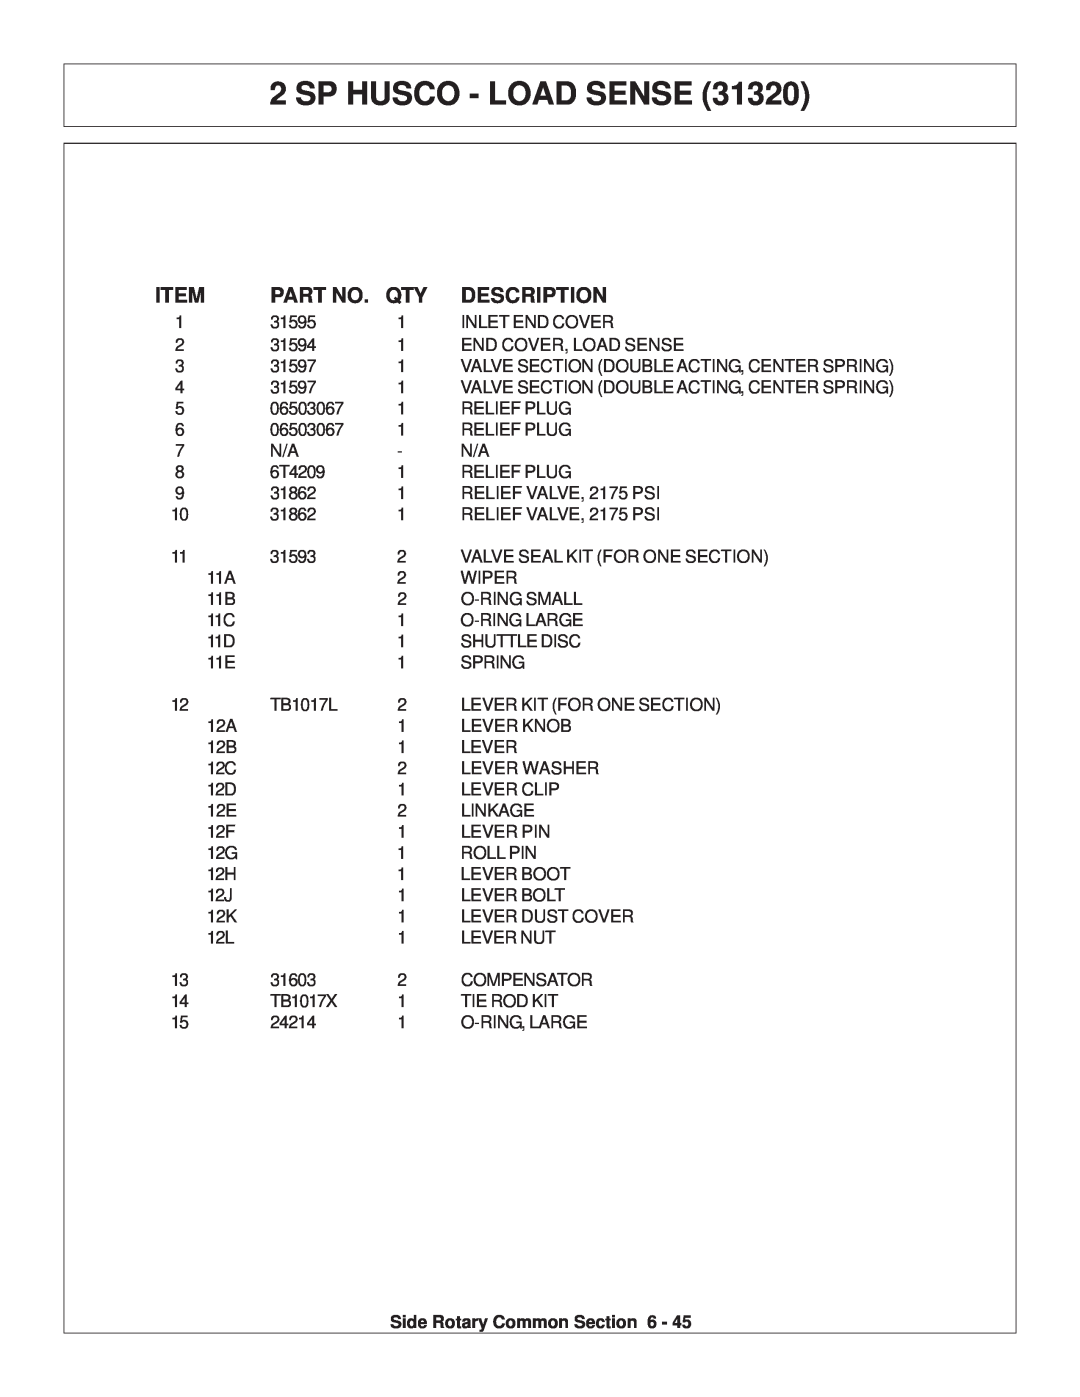 Tiger Products Co., Ltd TS 100A manual Sp Husco - Load Sense, Description 